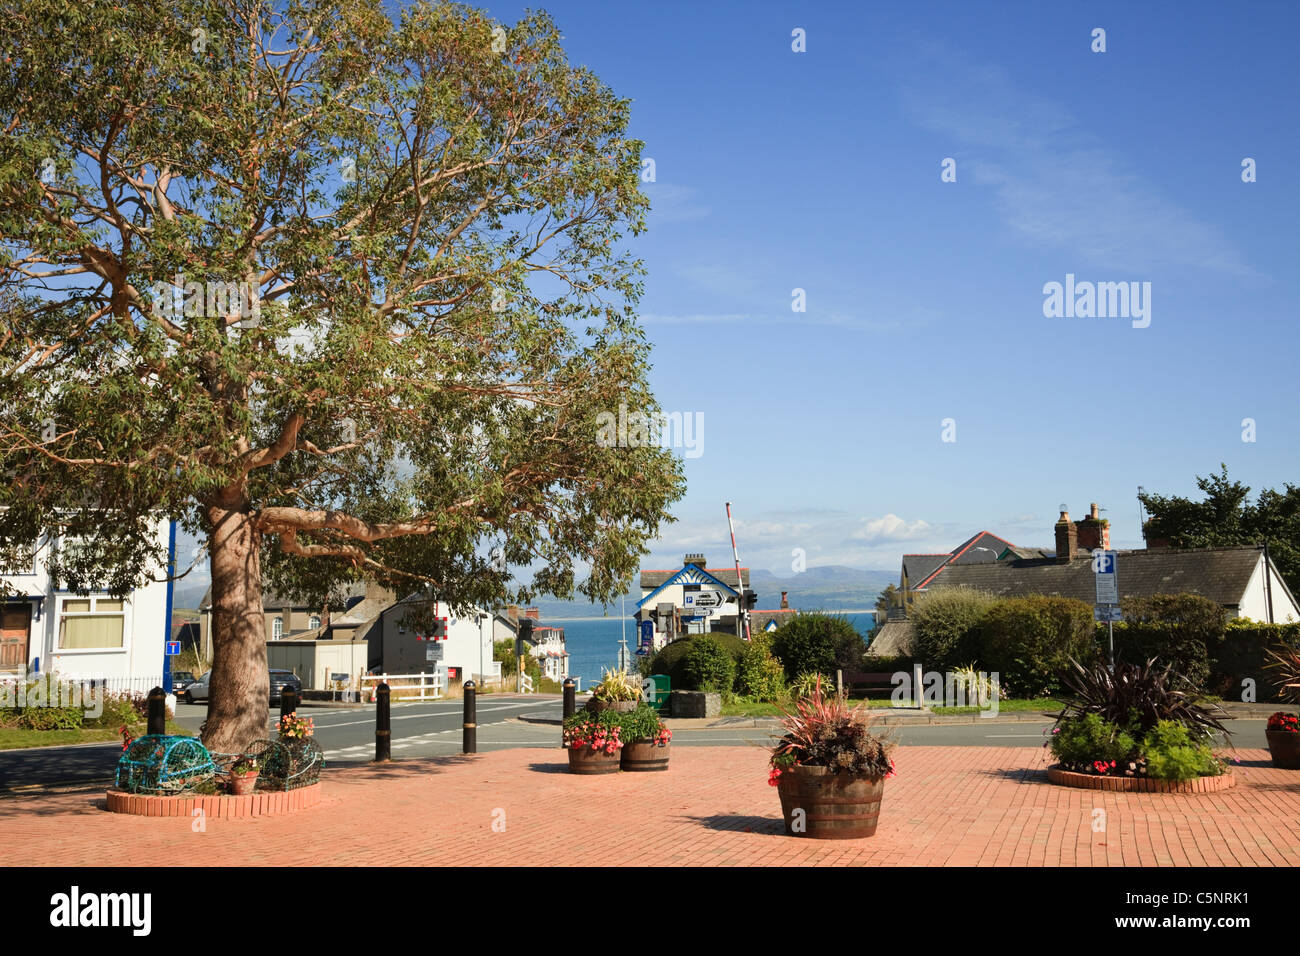 Blocco piazza pavimentata con vasi di fiori in Welsh cittadina sul mare. Y Maes, Criccieth, Llyn Peninsula, Gwynedd, il Galles del Nord, Regno Unito, Gran Bretagna Foto Stock